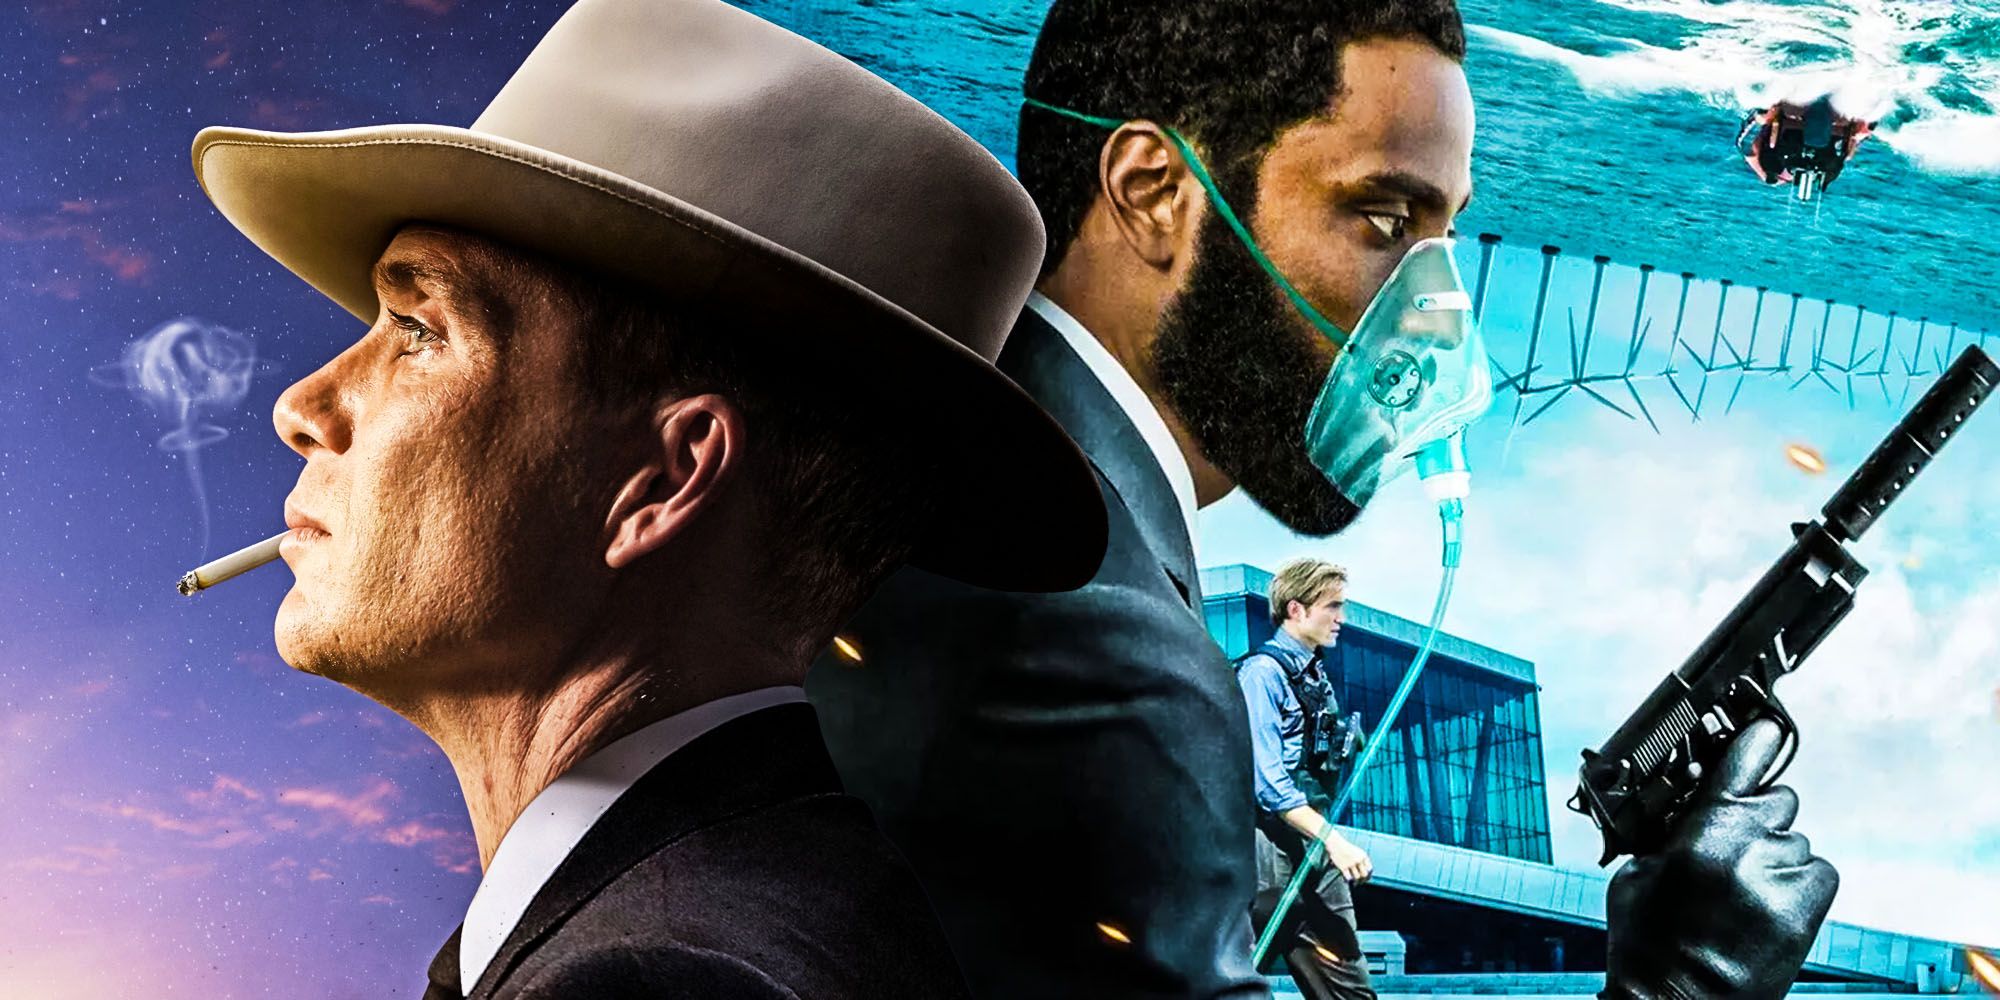 When Will Christopher Nolan's Oppenheimer Trailer Release Online?